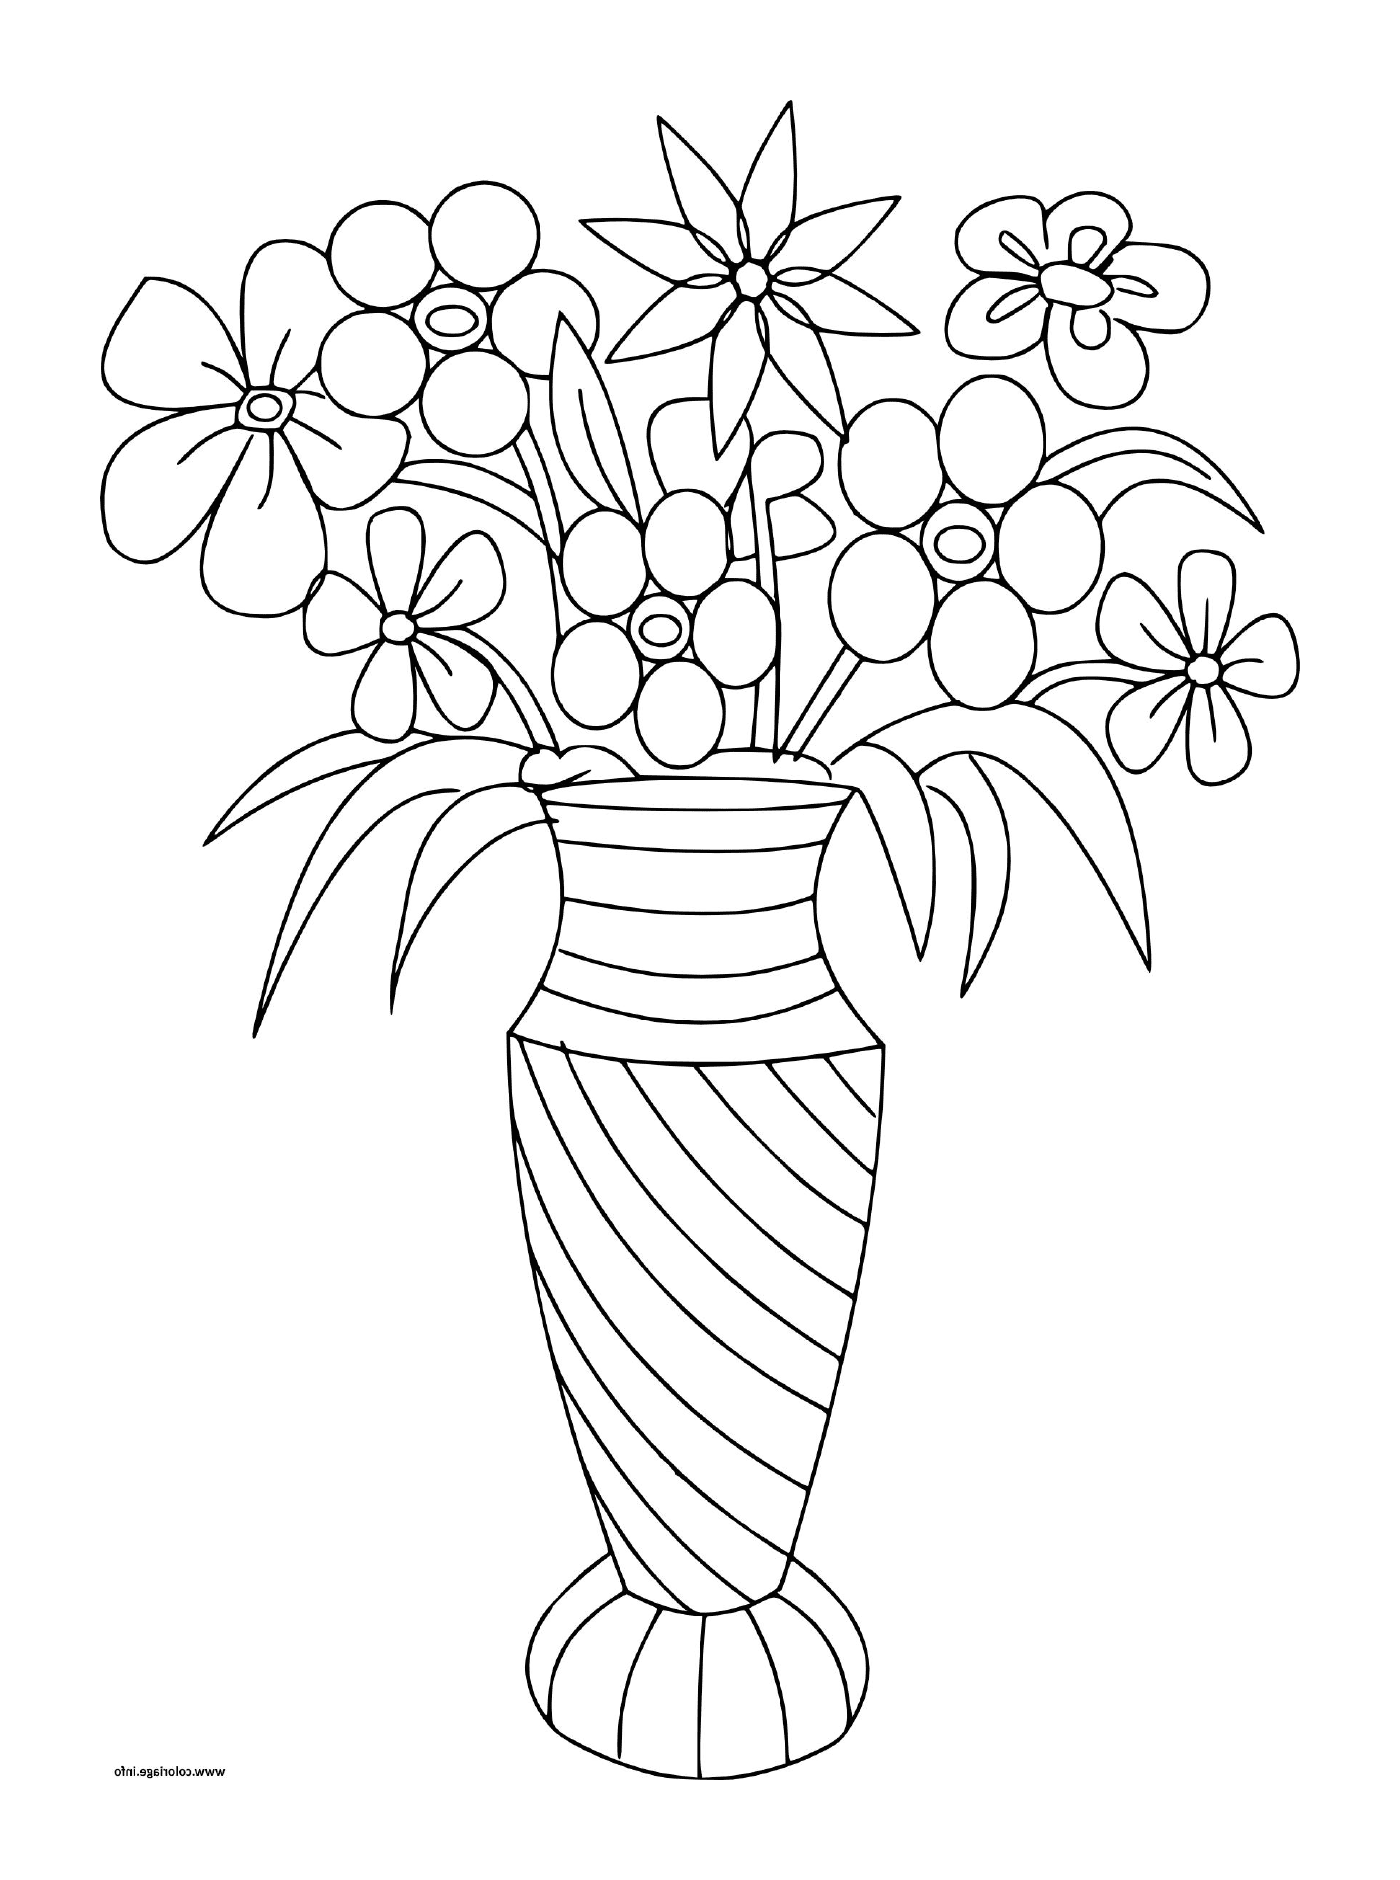  Verschiedene Blumensträuße in einer Vase 